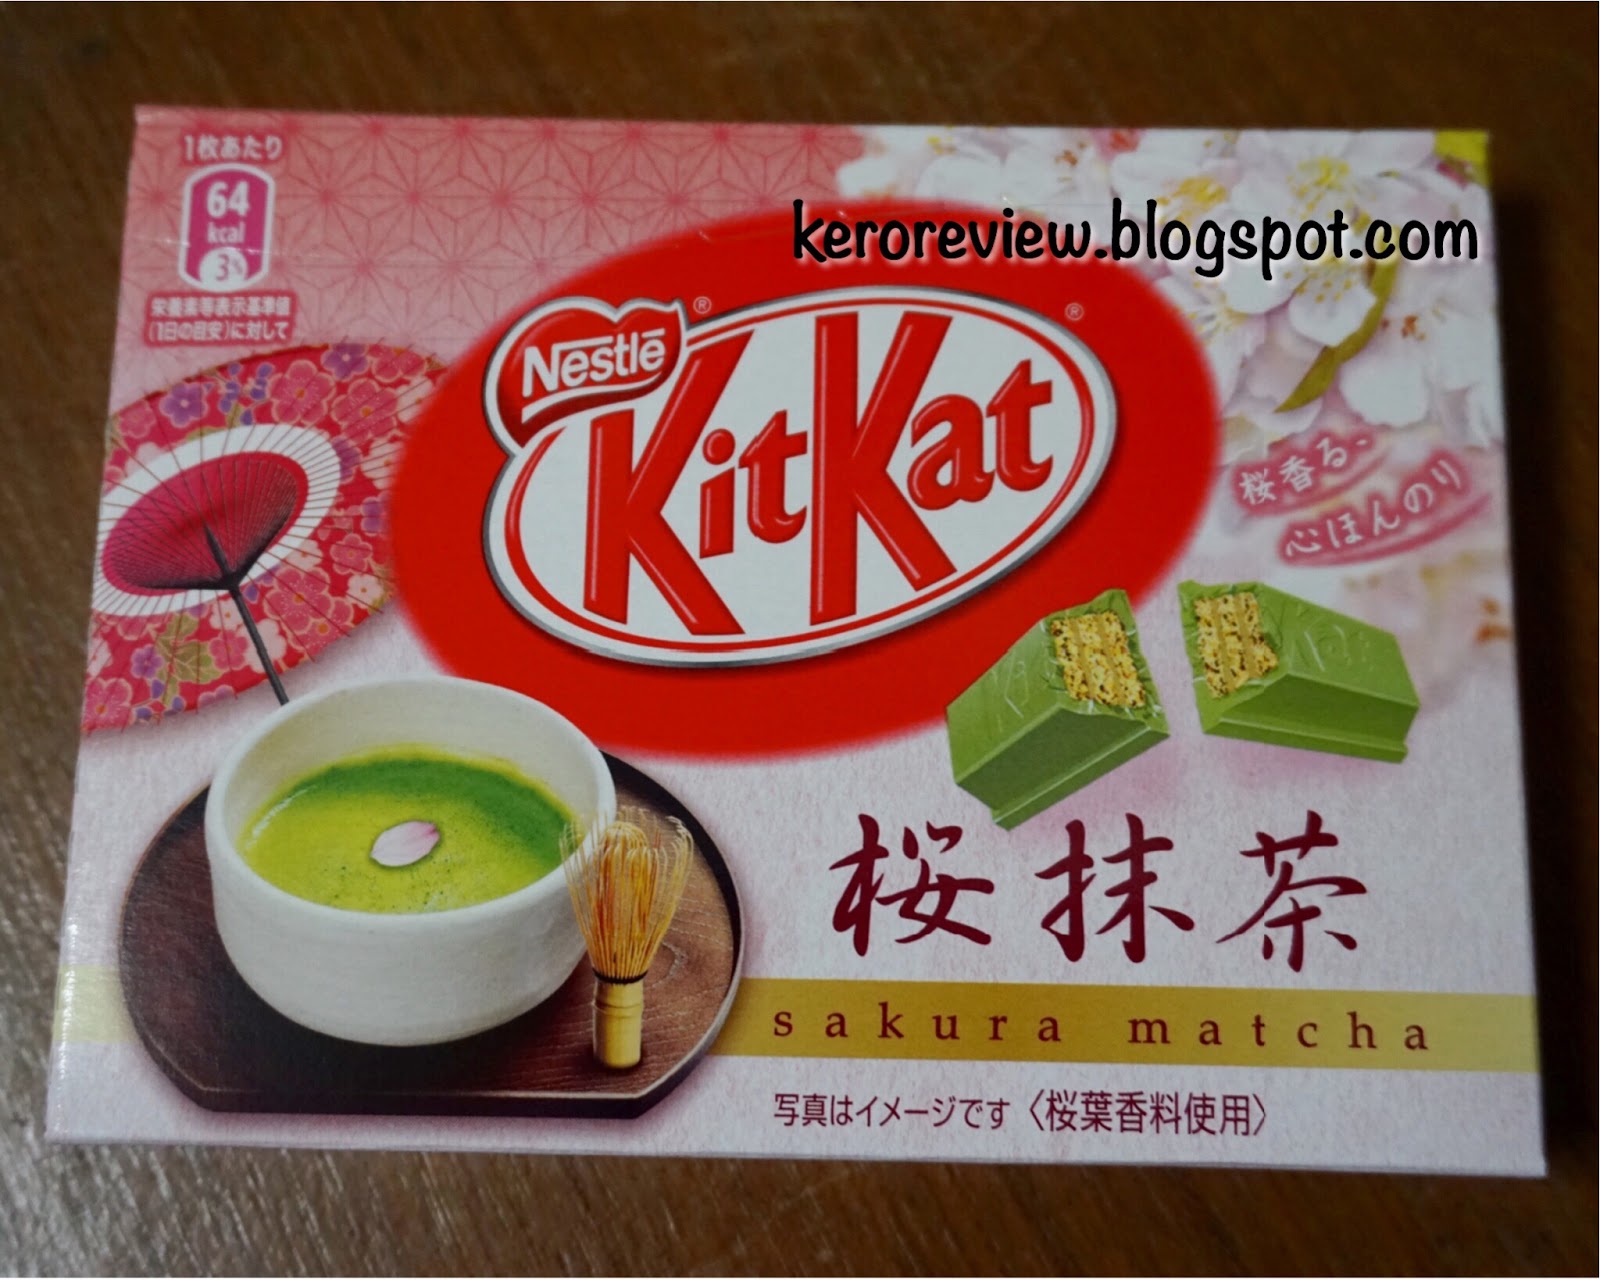 รีวิว คิทแคท รสชาเขียว ซากุระ จากญี่ปุ่น (CR) Review Kit Kat Sakura Matcha from Japan.